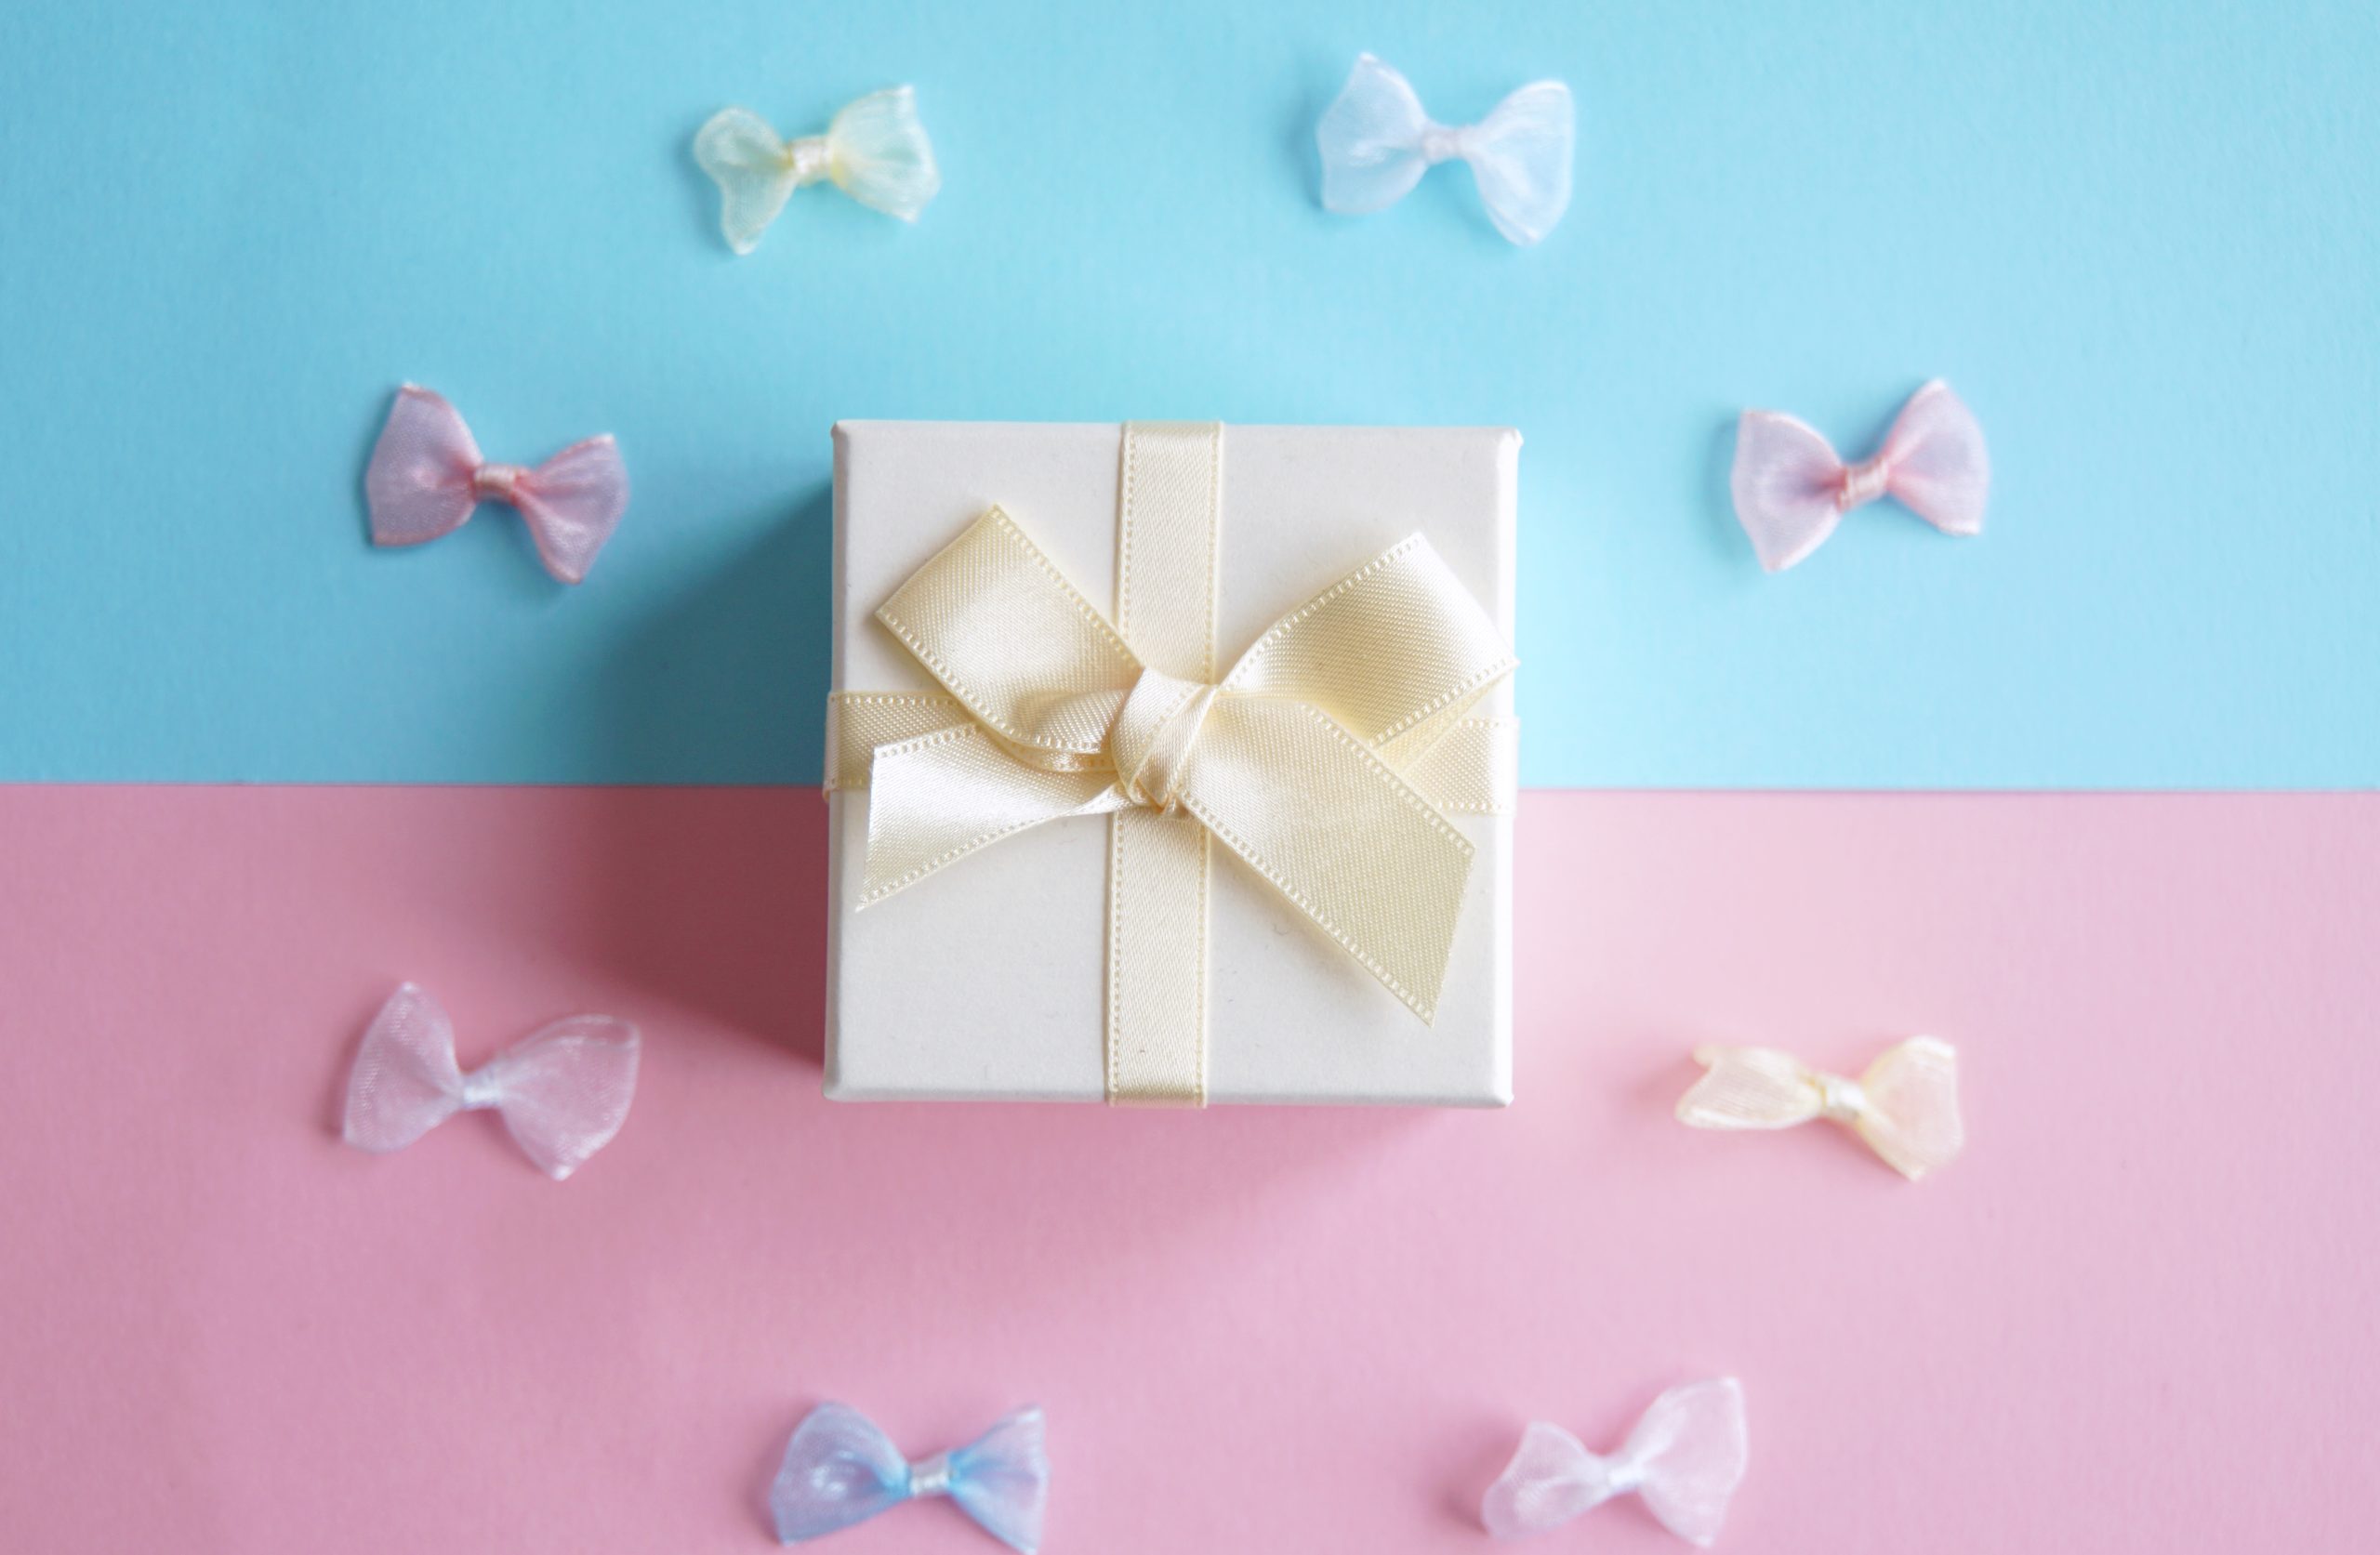 水色とピンクの背景に白いプレゼントボックスとリボンがうつってるイメージ